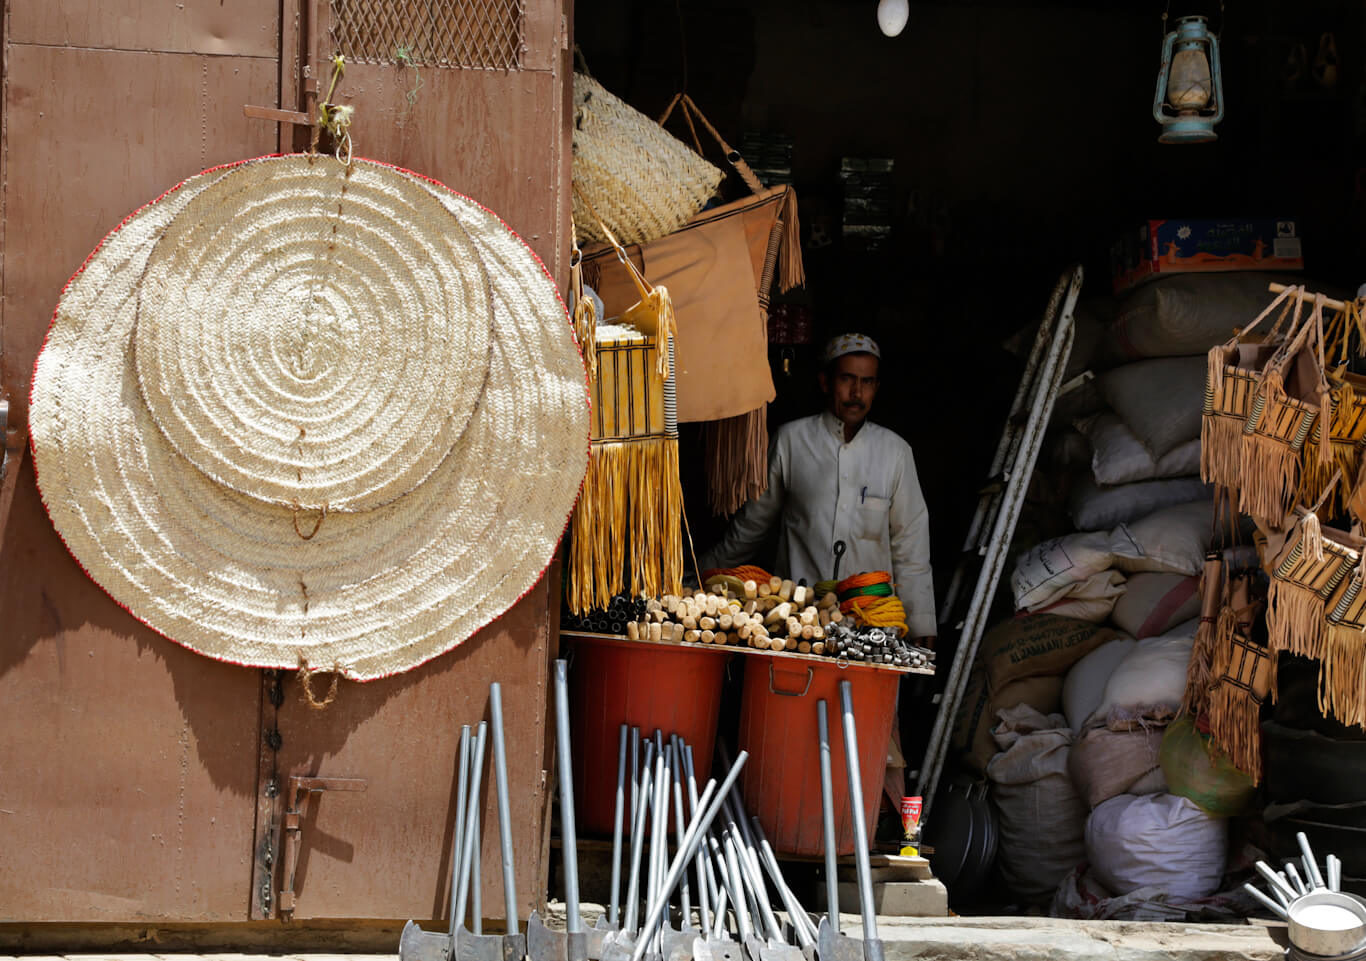 A Yemeni vendor sells coffee and in the old market in Najran, Saudi Arabia.